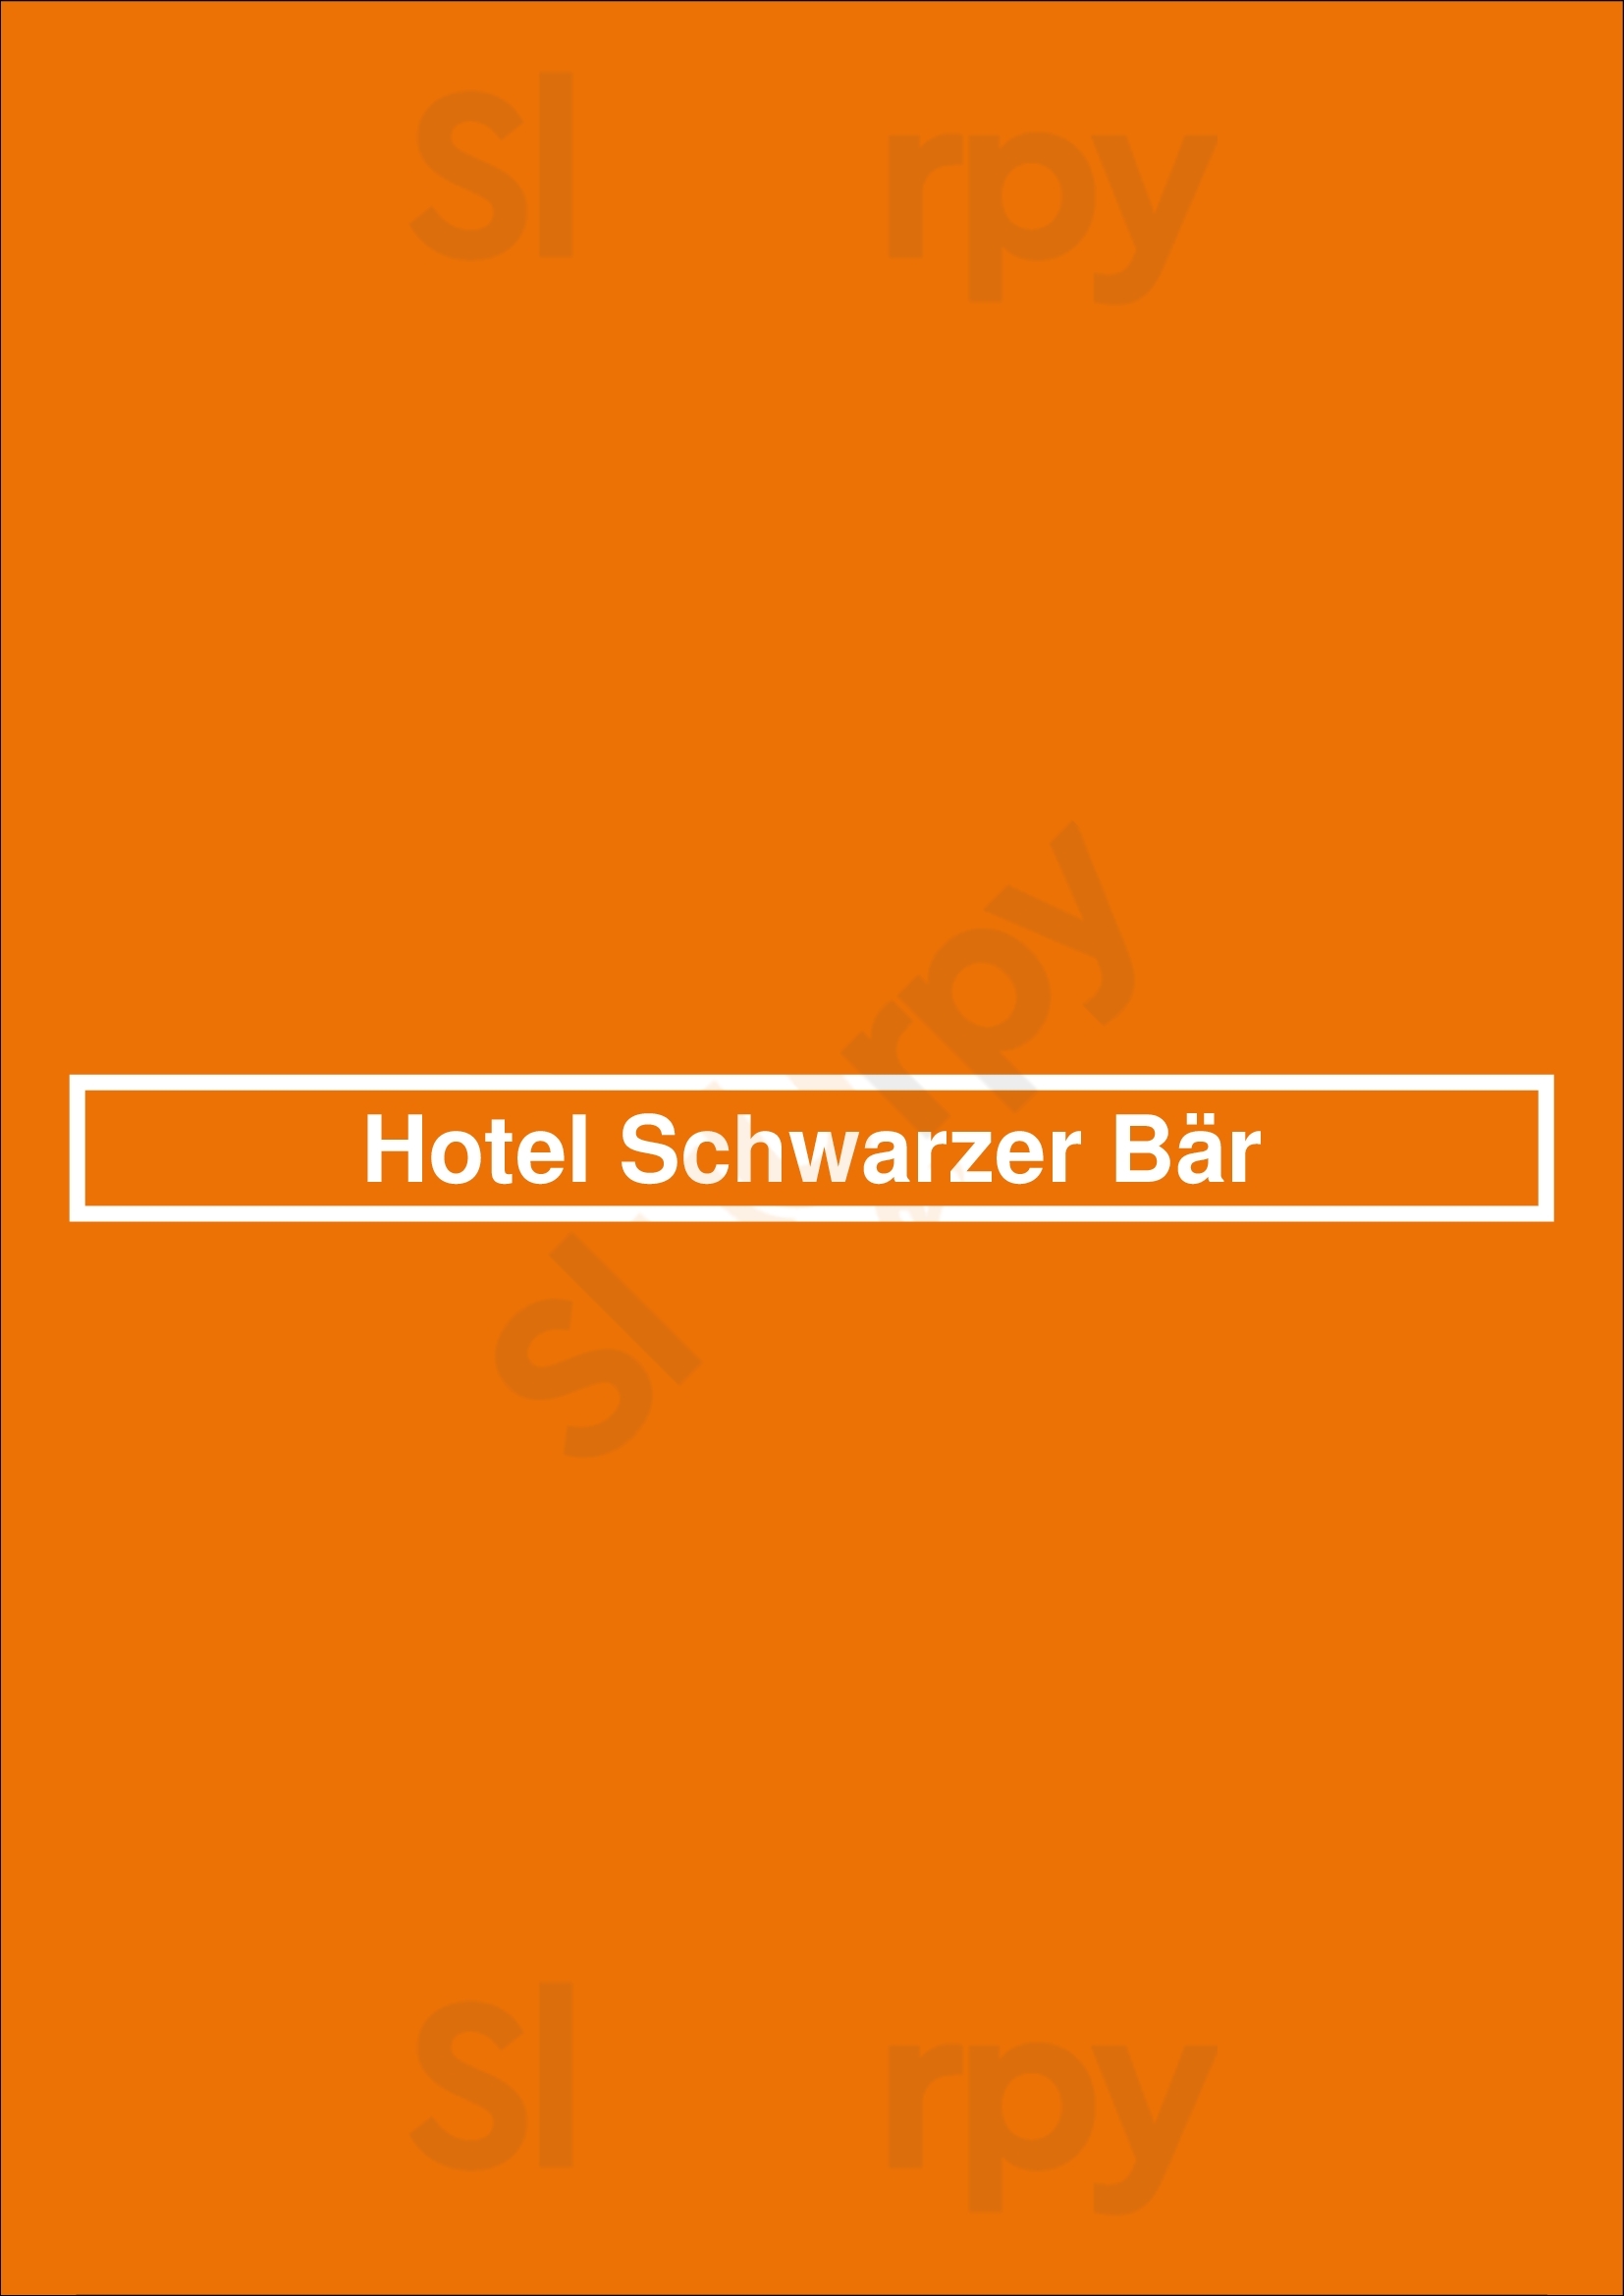 Hotel Schwarzer Bär Jena Menu - 1